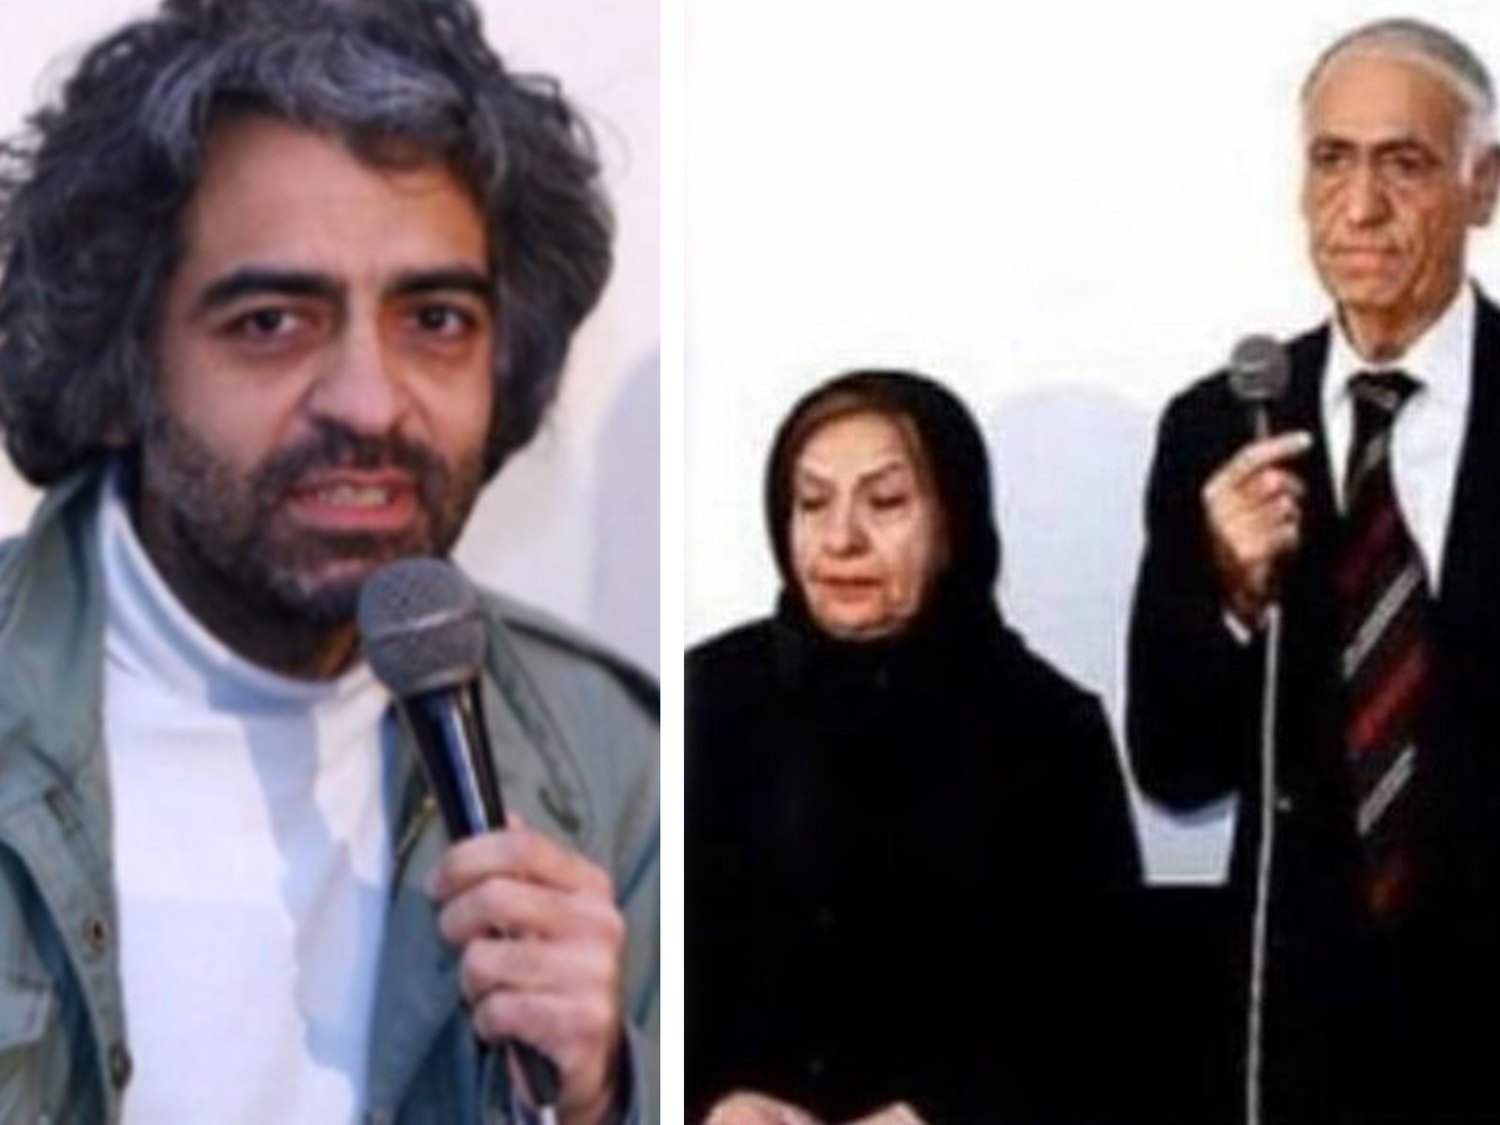 Un matrimonio iraní asesina y descuartiza a su hijo de 47 años, director de cine, por seguir soltero